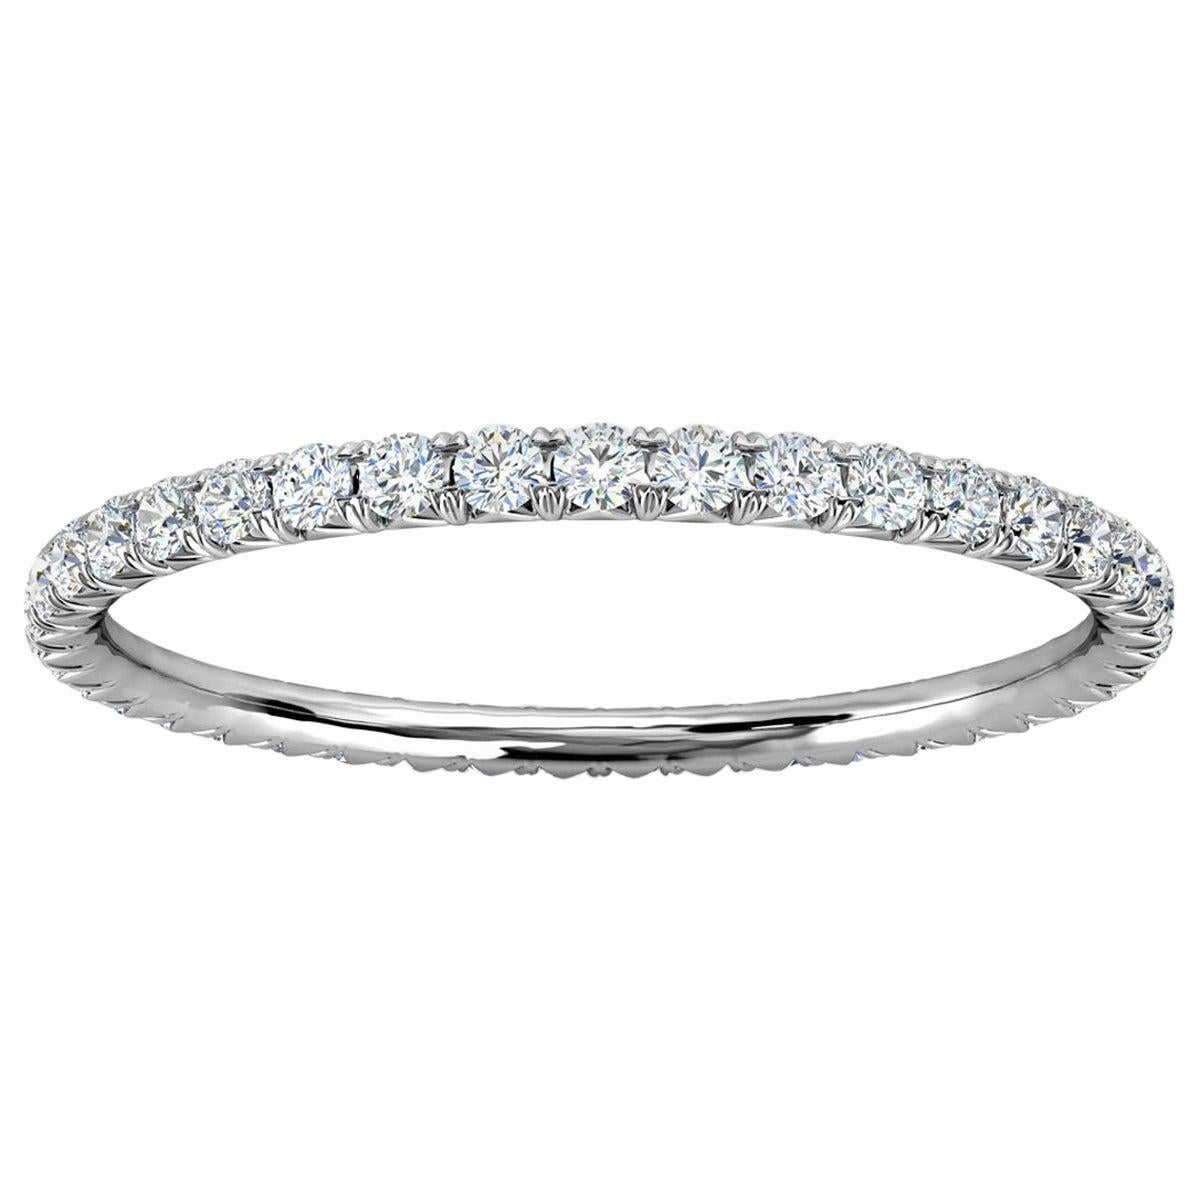 For Sale:  18K White Gold Mia Mini French Pave Diamond Eternity Ring '1/3 Ct. Tw'